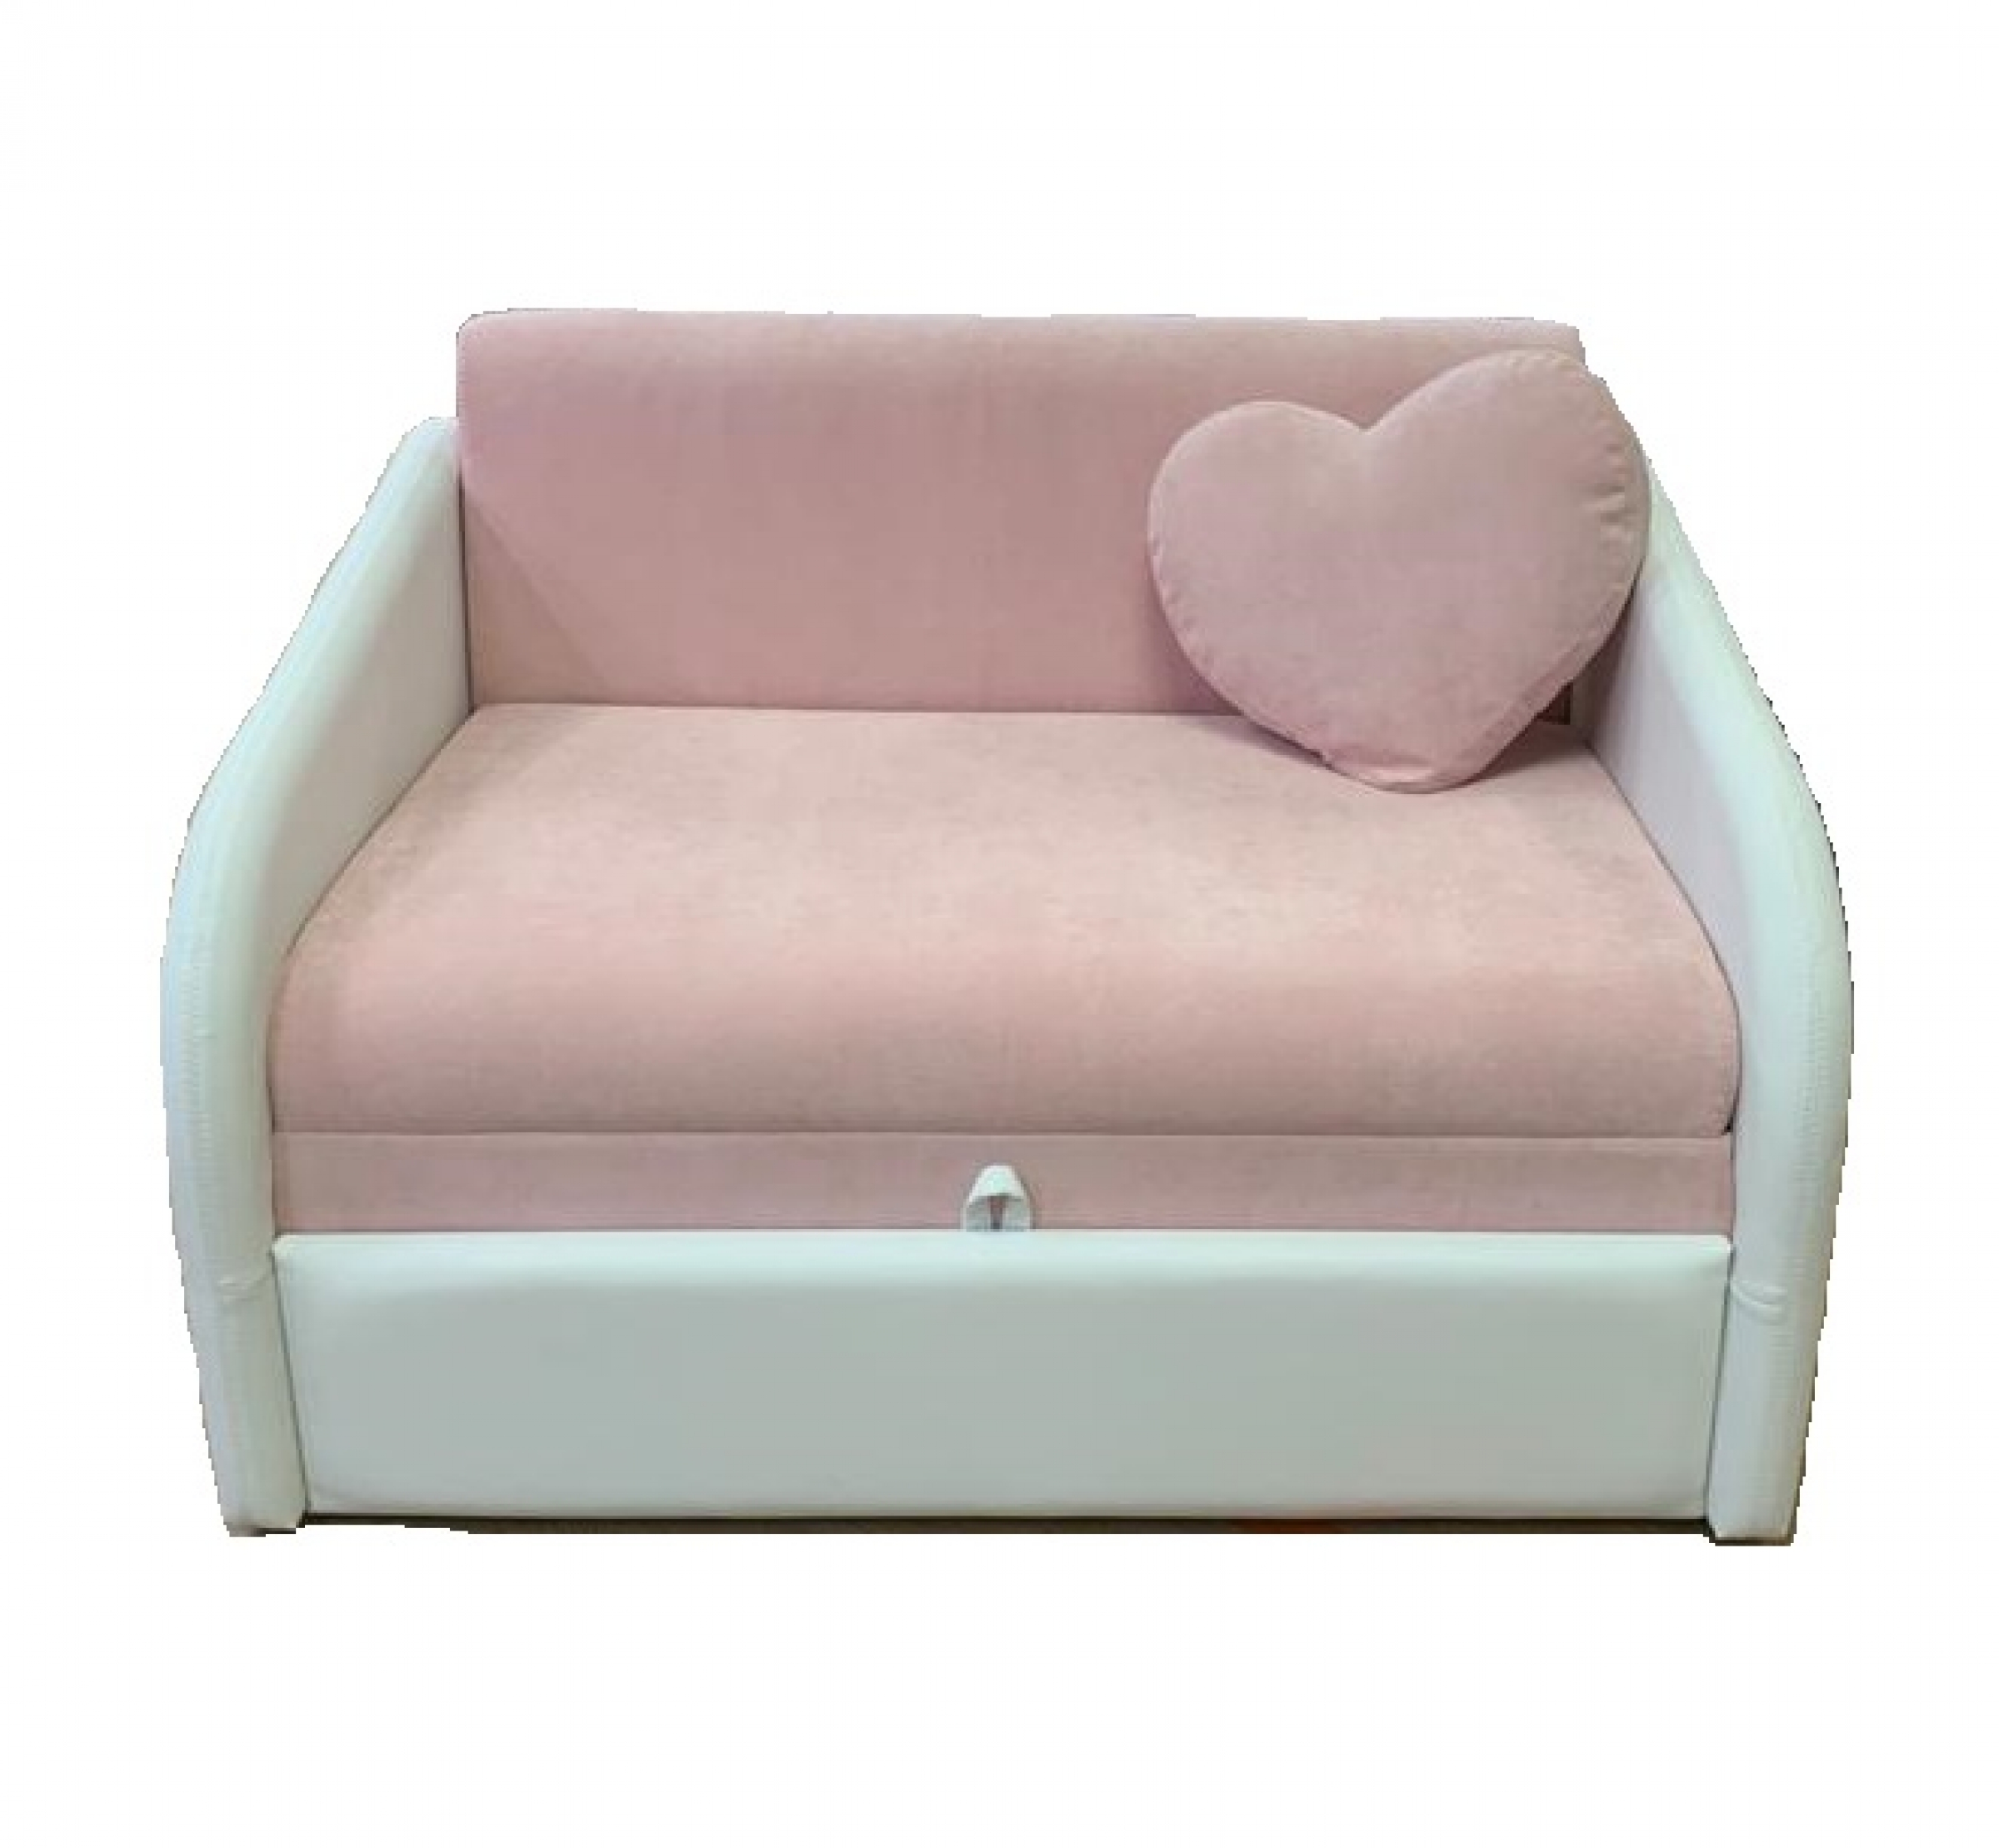 Klюkva/Sherlock диван SMART (VL37) - купить с гарантией по низкой цене, доставка по Москве и России, Фабрика Klюkva/Sherlock - Маленькие диваны - bed-mobile